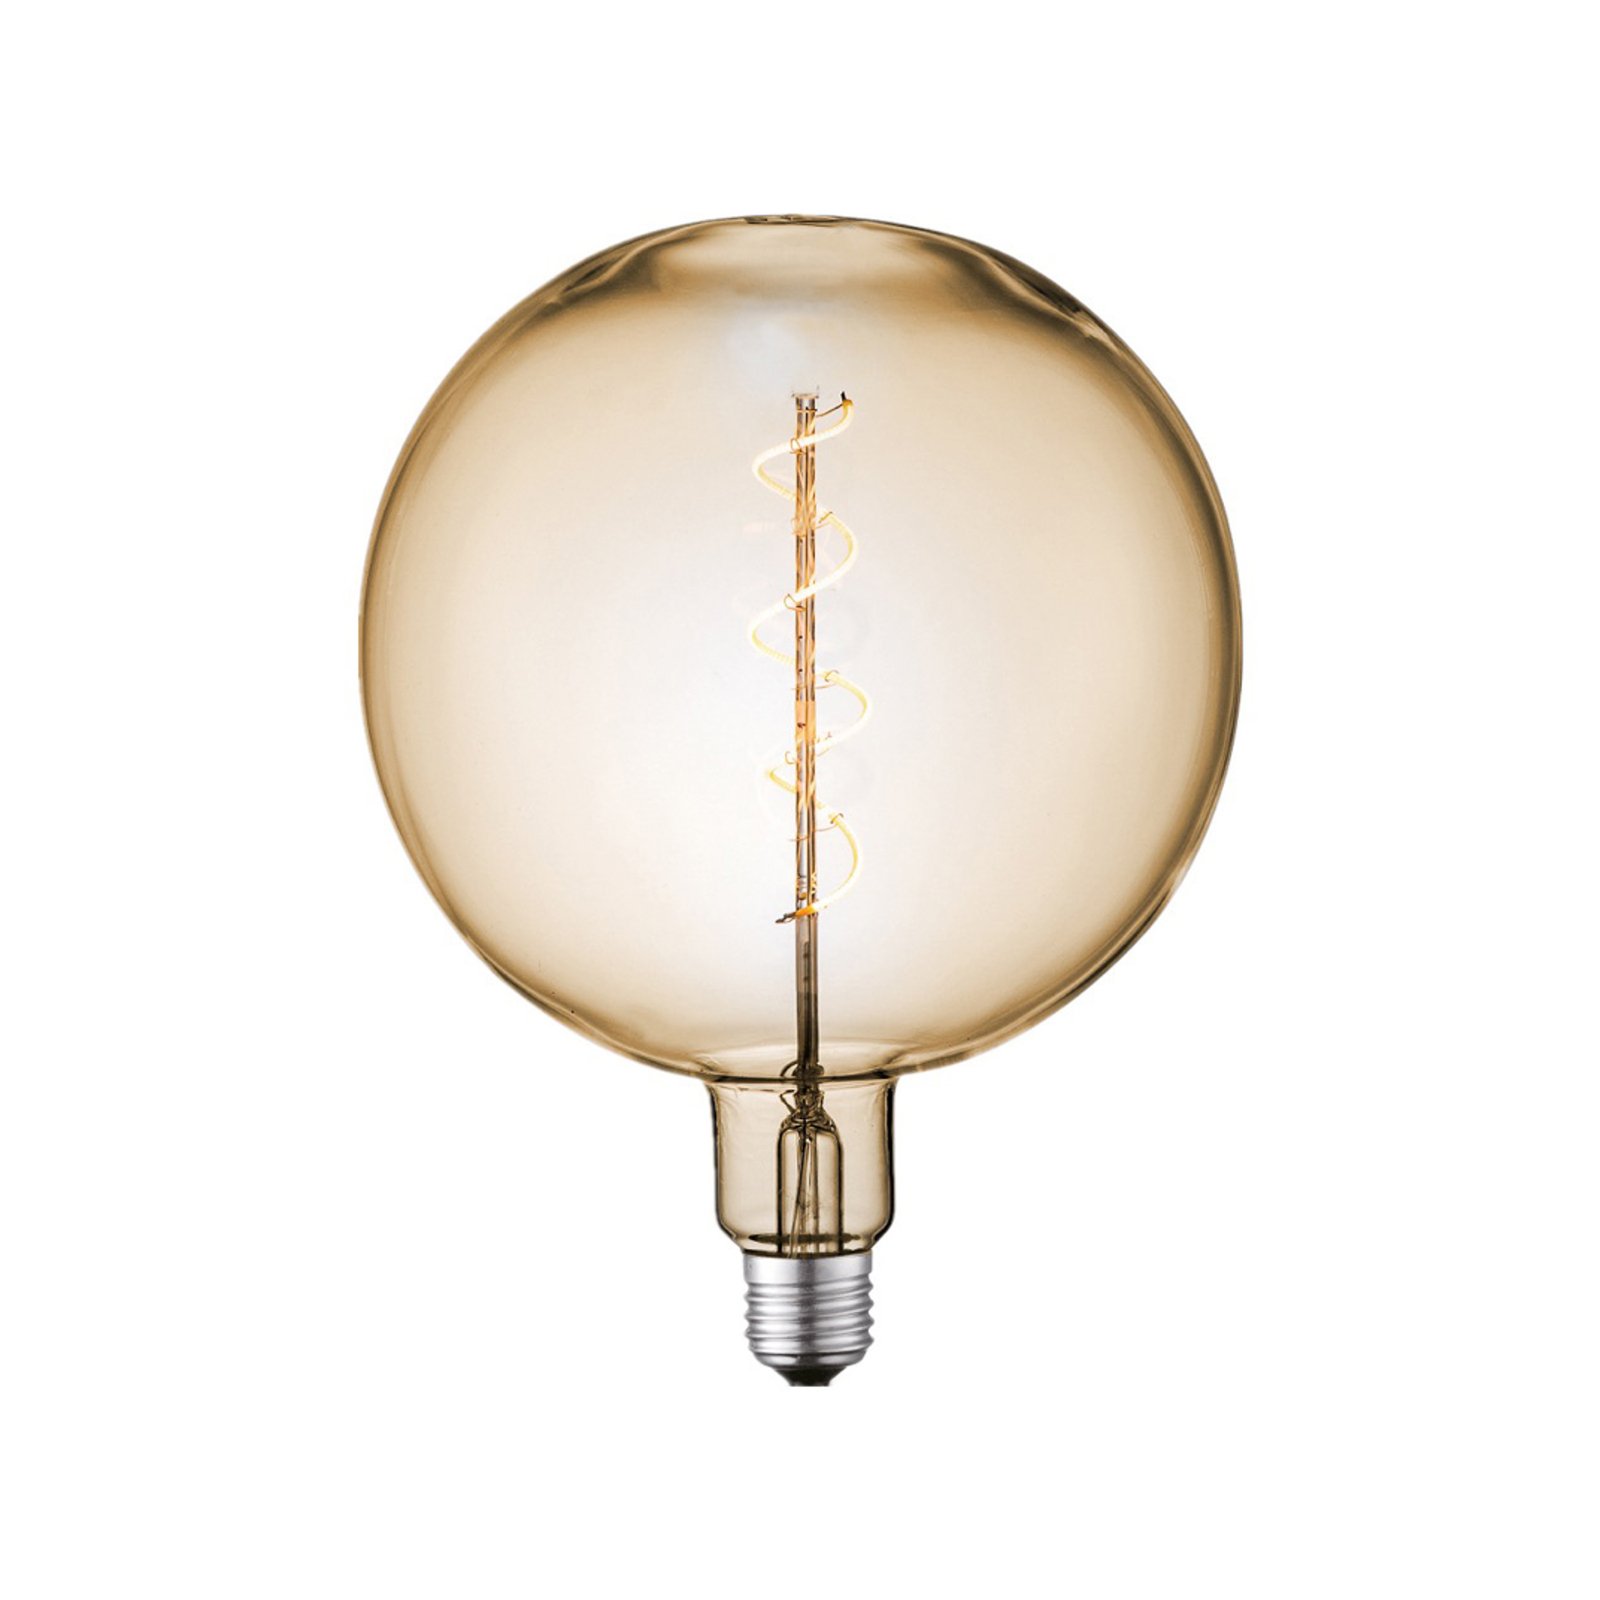 Lucande LED lamp E27 Ø 18cm 4W 2700K amber